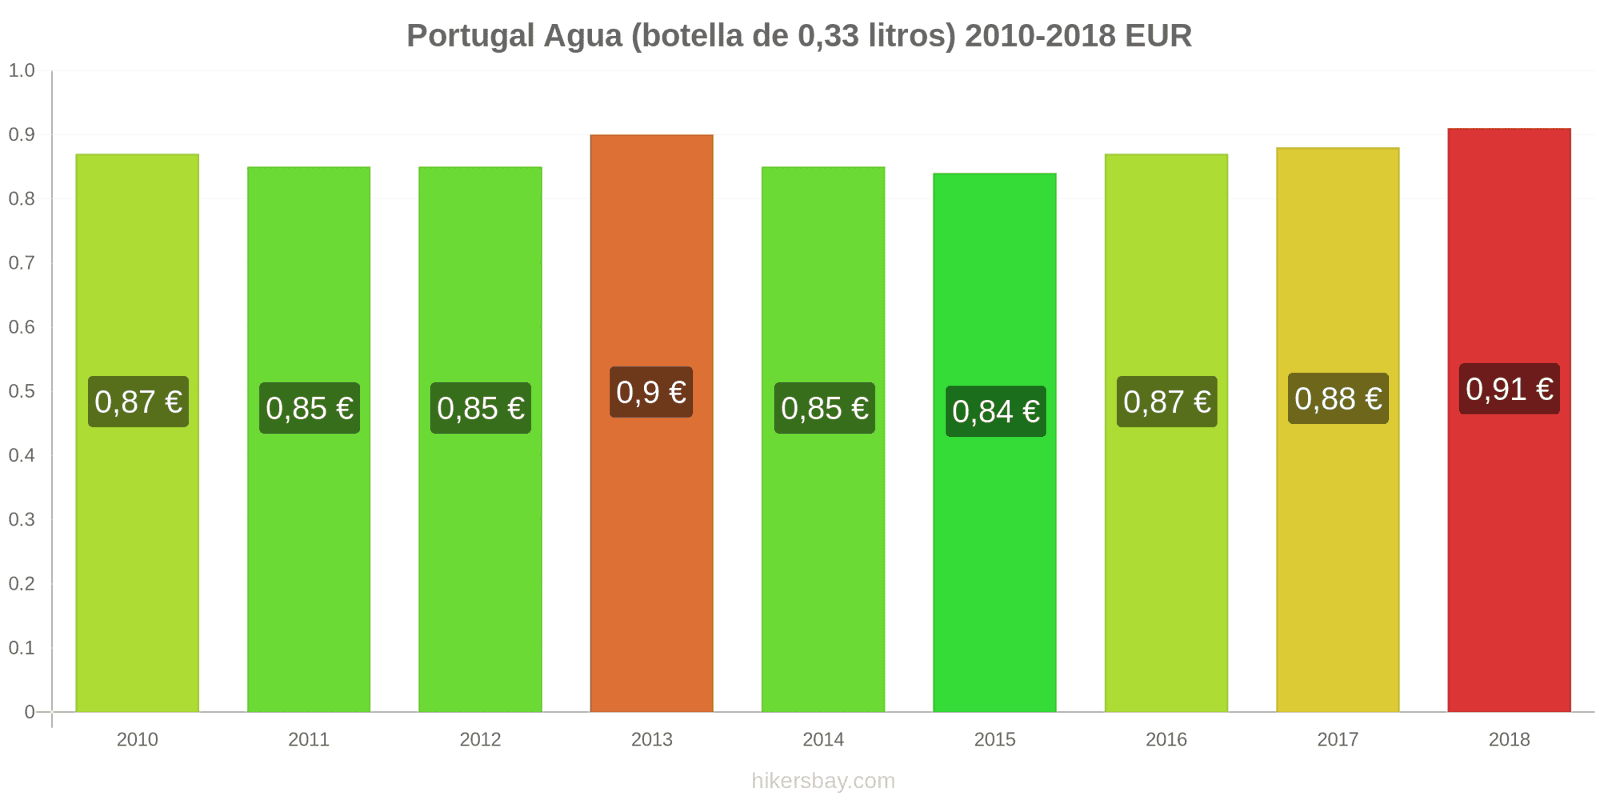 Portugal cambios de precios Agua (botella de 0.33 litros) hikersbay.com